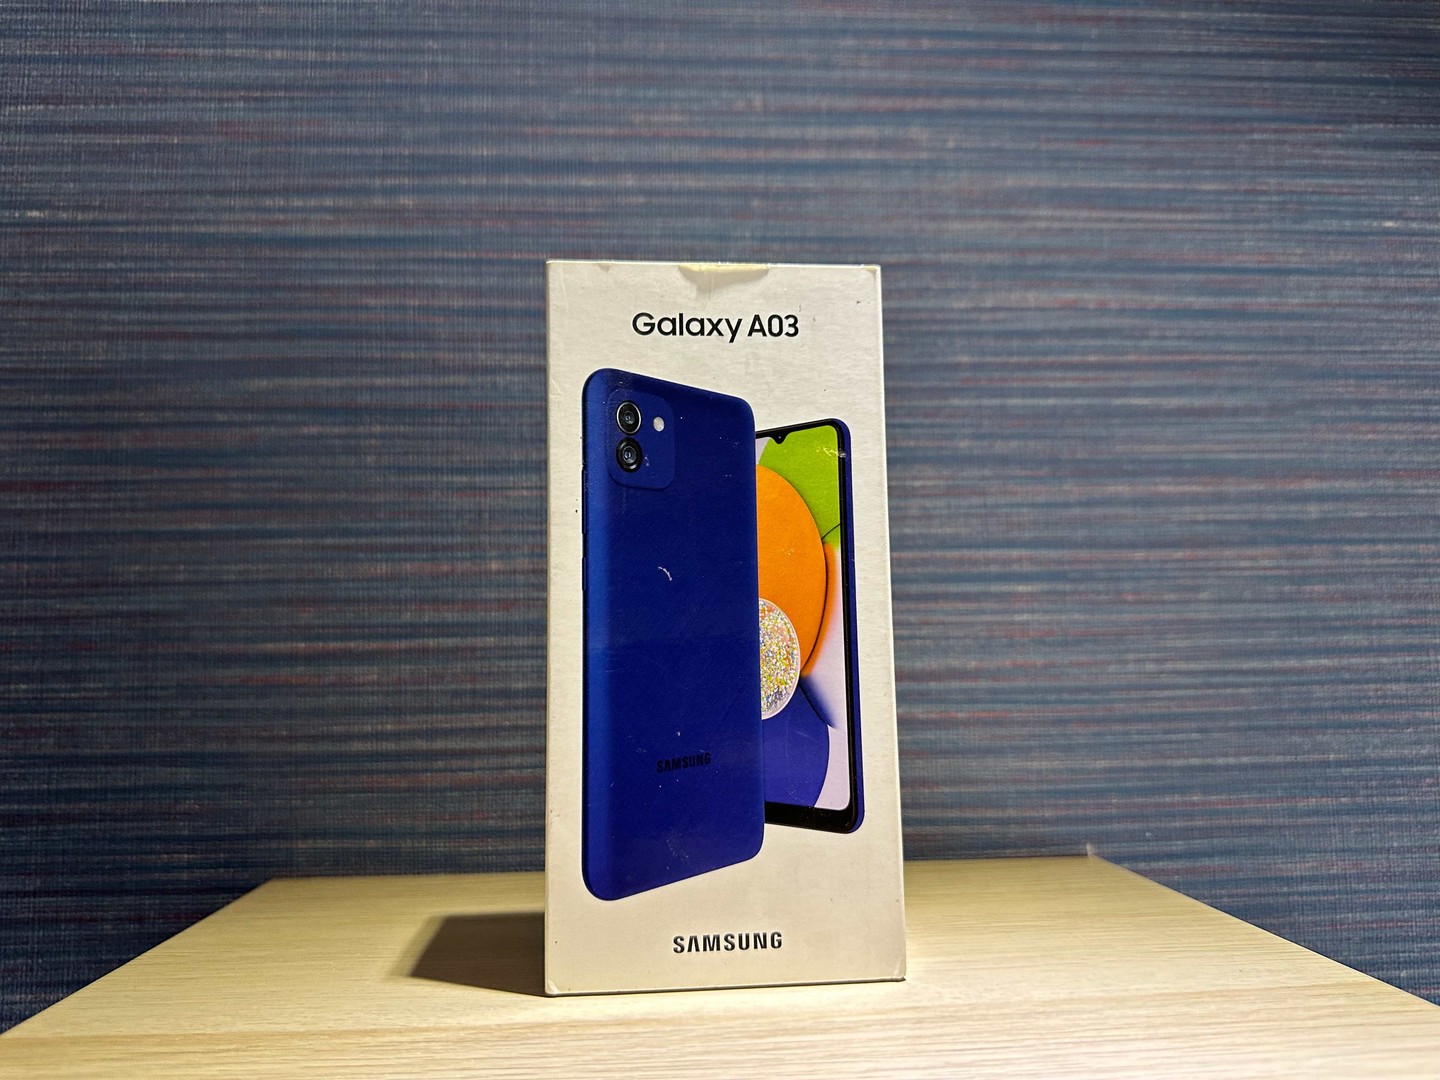 celulares y tabletas - Vendo Samsung Galaxy A03 64GB Azul Nuevo, Desbloqueado,GarantÍa, RD$ 6,800 NEG 0